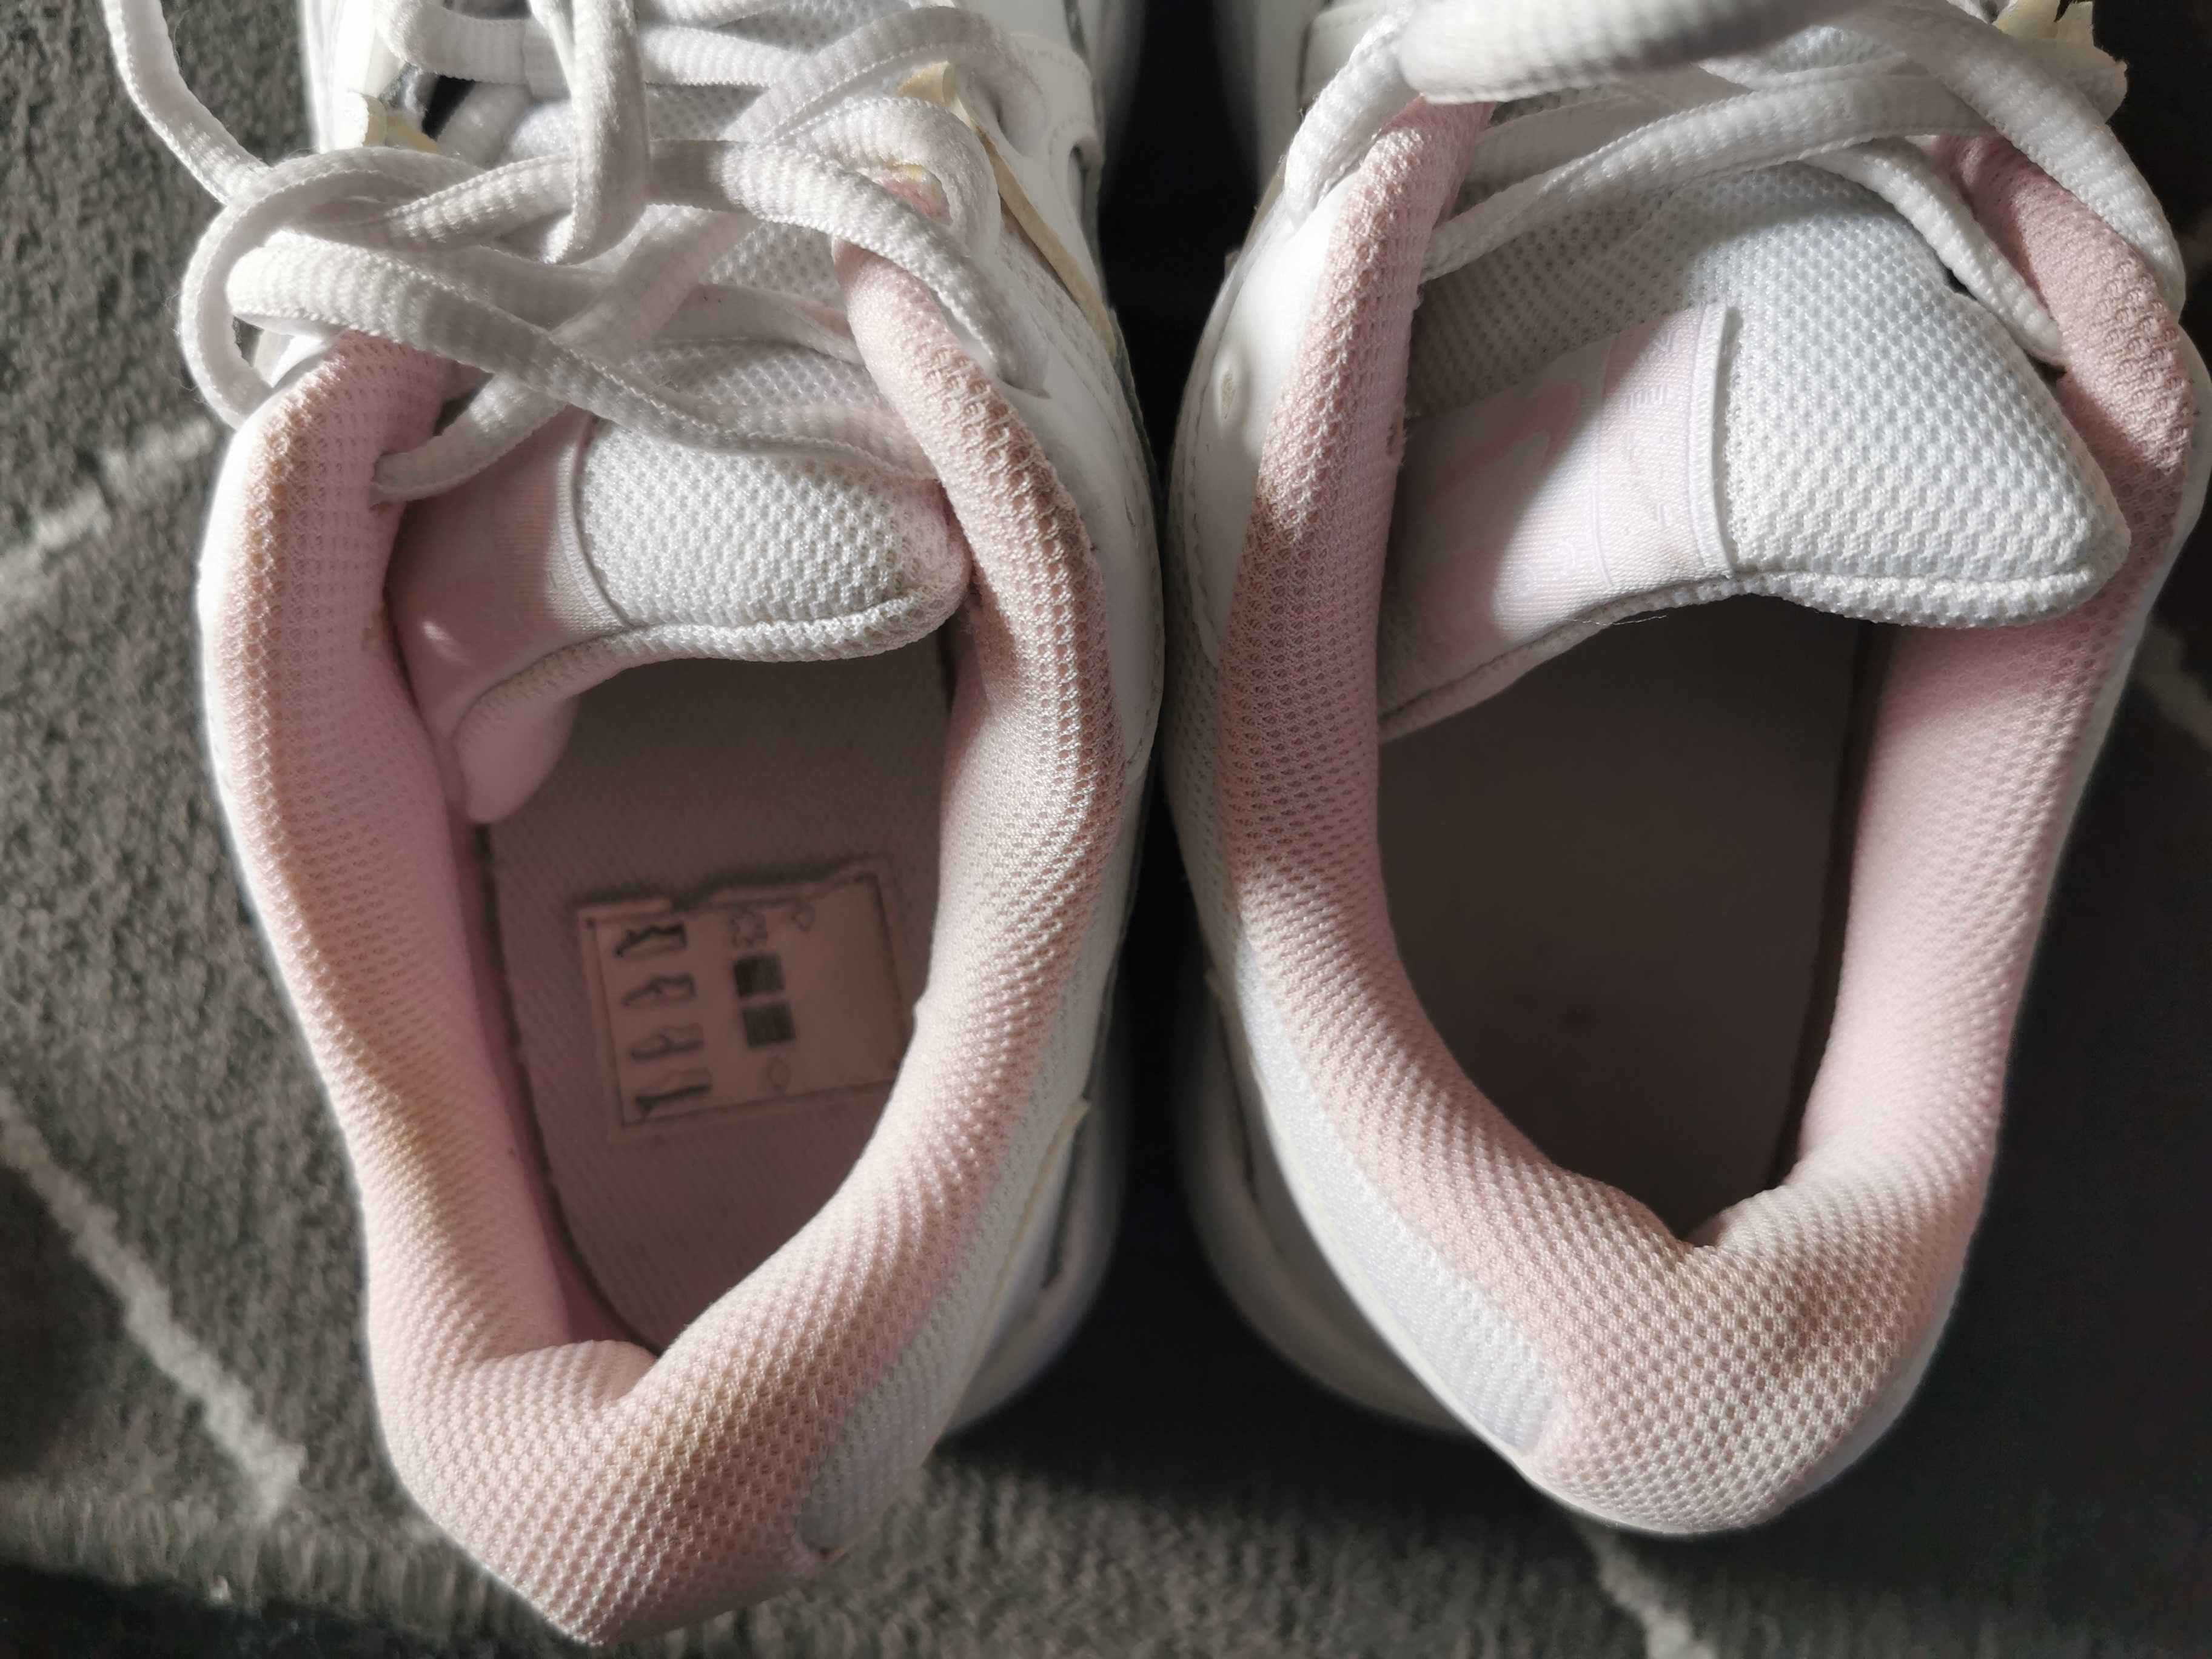 Nike Buty damskie sportowe Court Lite 2 r. 42 biało różowe NOWE